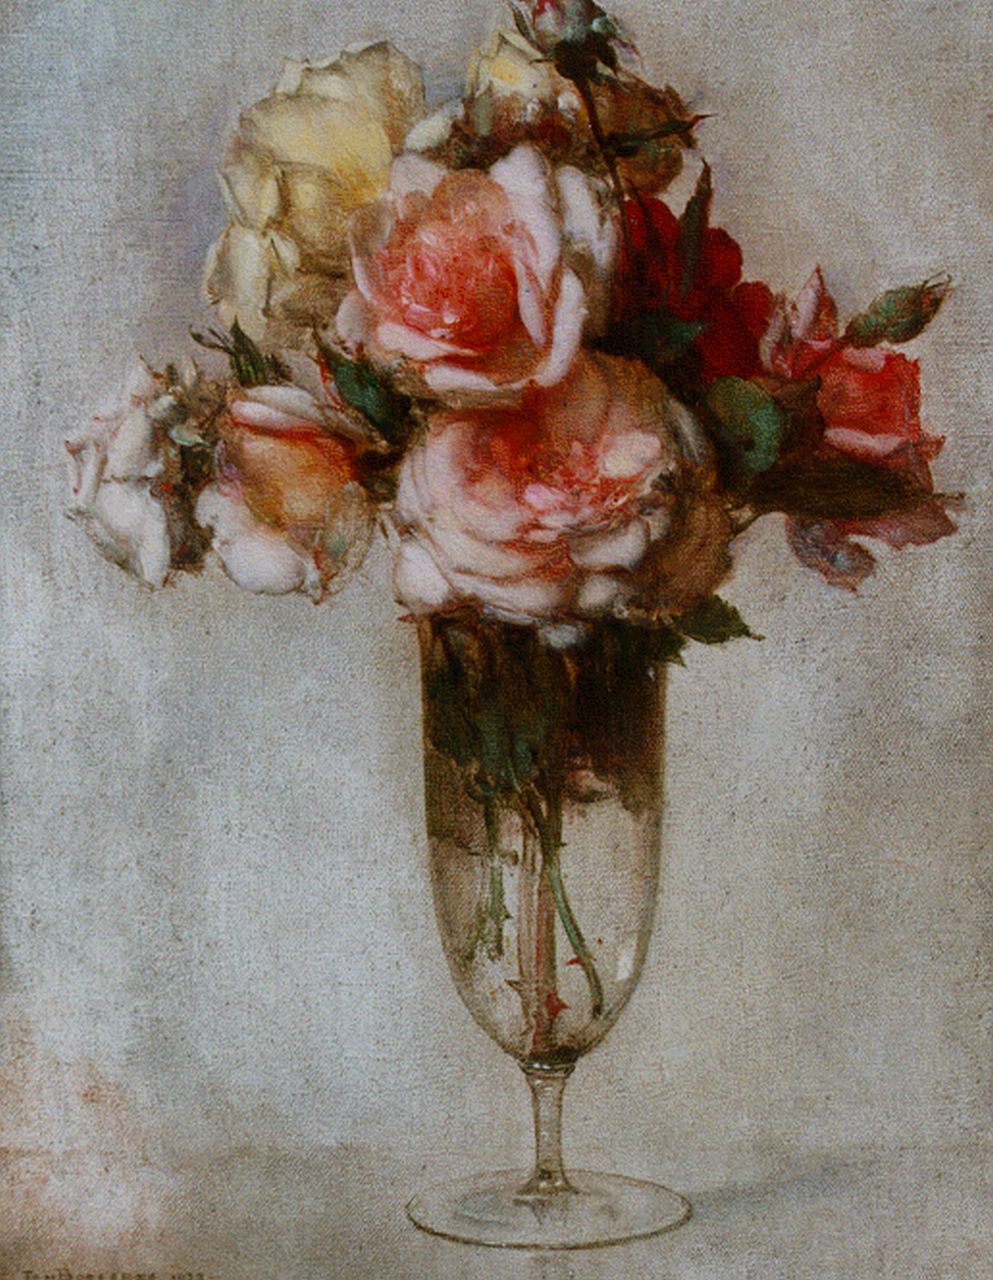 Bogaerts J.J.M.  | Johannes Jacobus Maria 'Jan' Bogaerts, Glazen vaas met rozen, olieverf op doek 40,0 x 30,2 cm, gesigneerd linksonder en gedateerd 1927